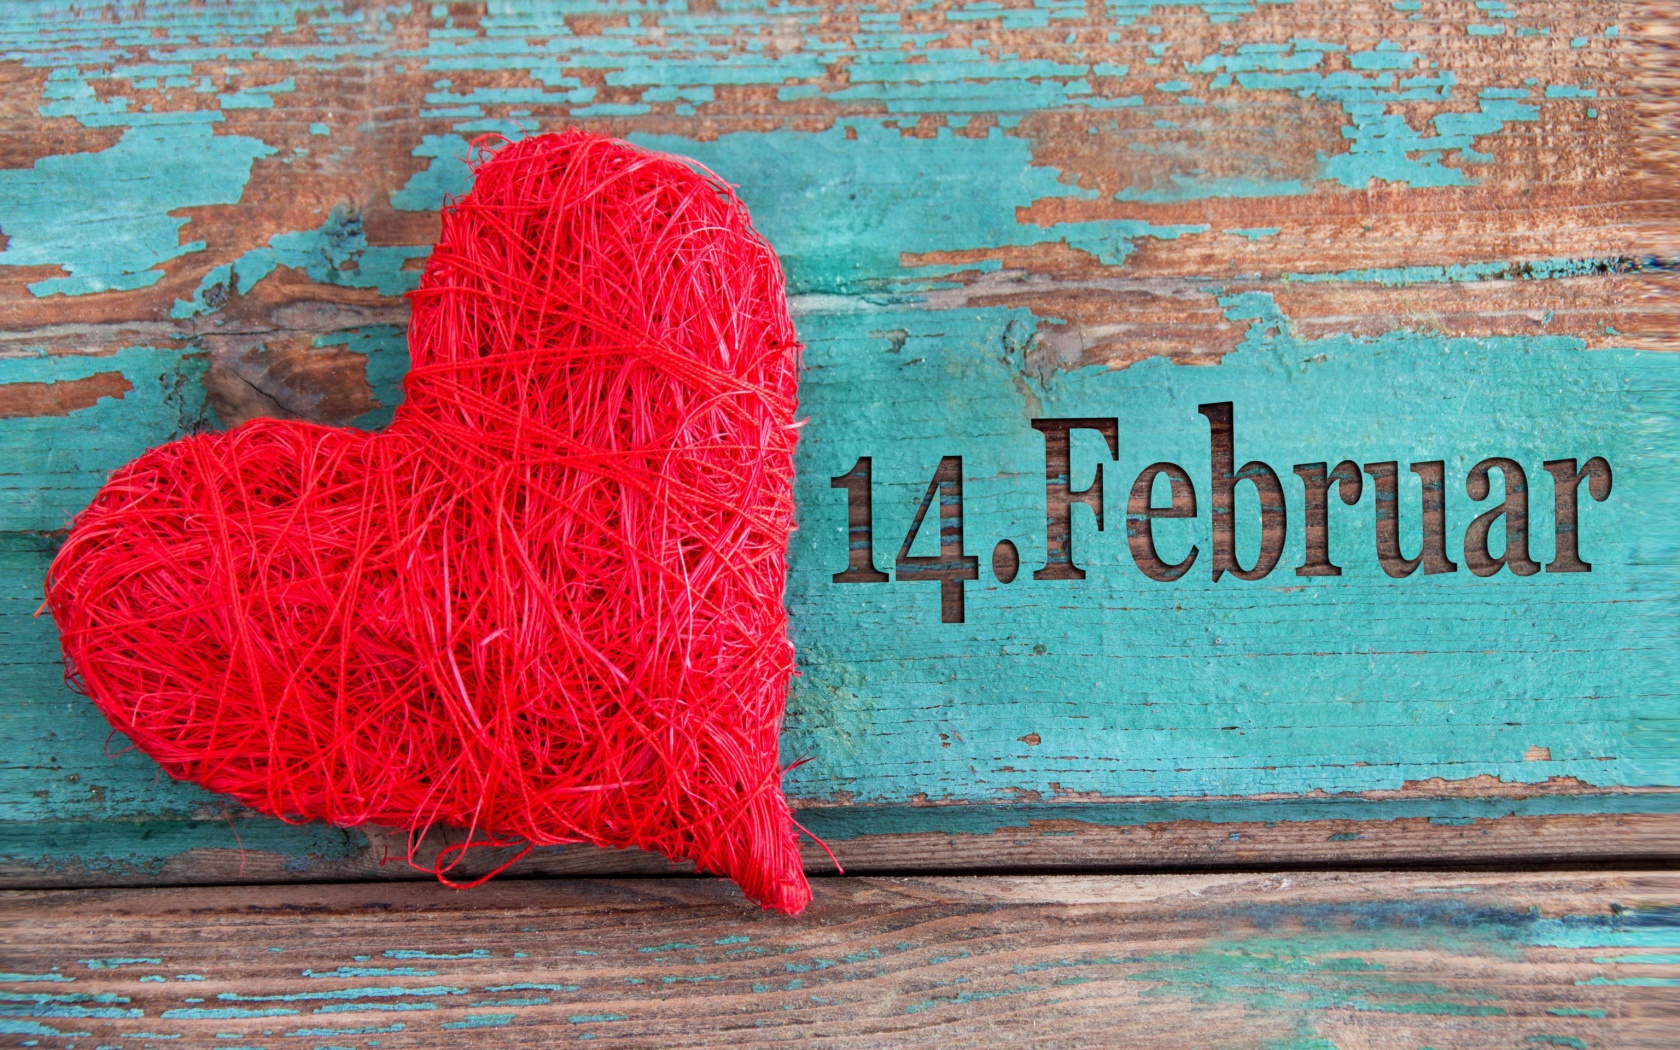 Sfondi Happy Valentines Day - February 14 1680x1050